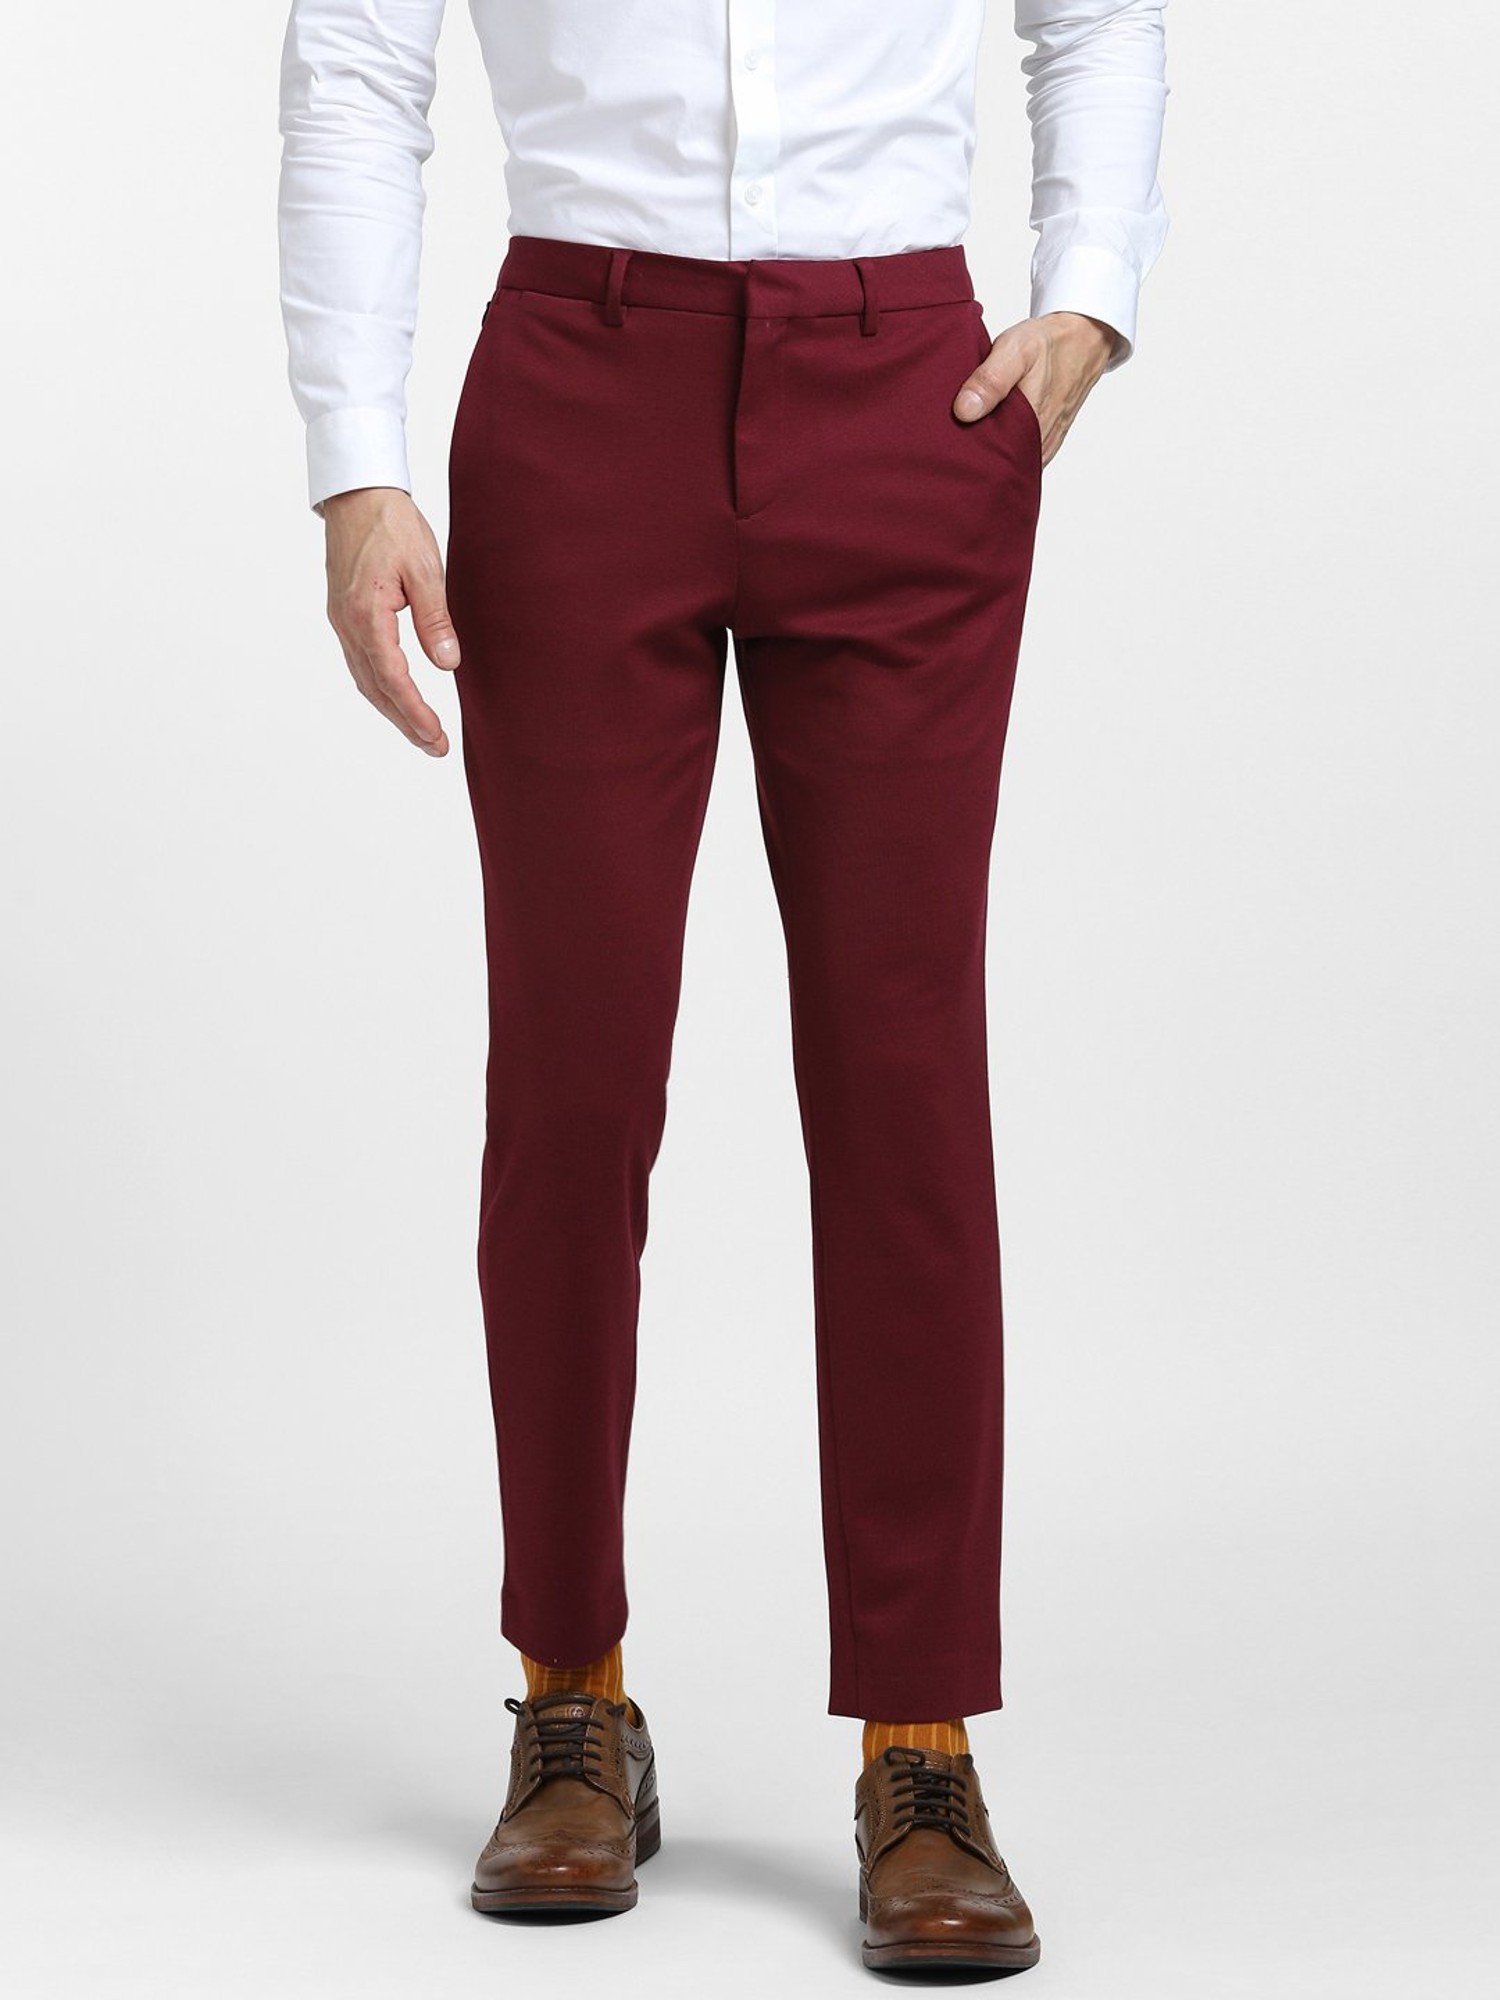 ASOS DESIGN skinny suit trousers in burgundy | ASOS